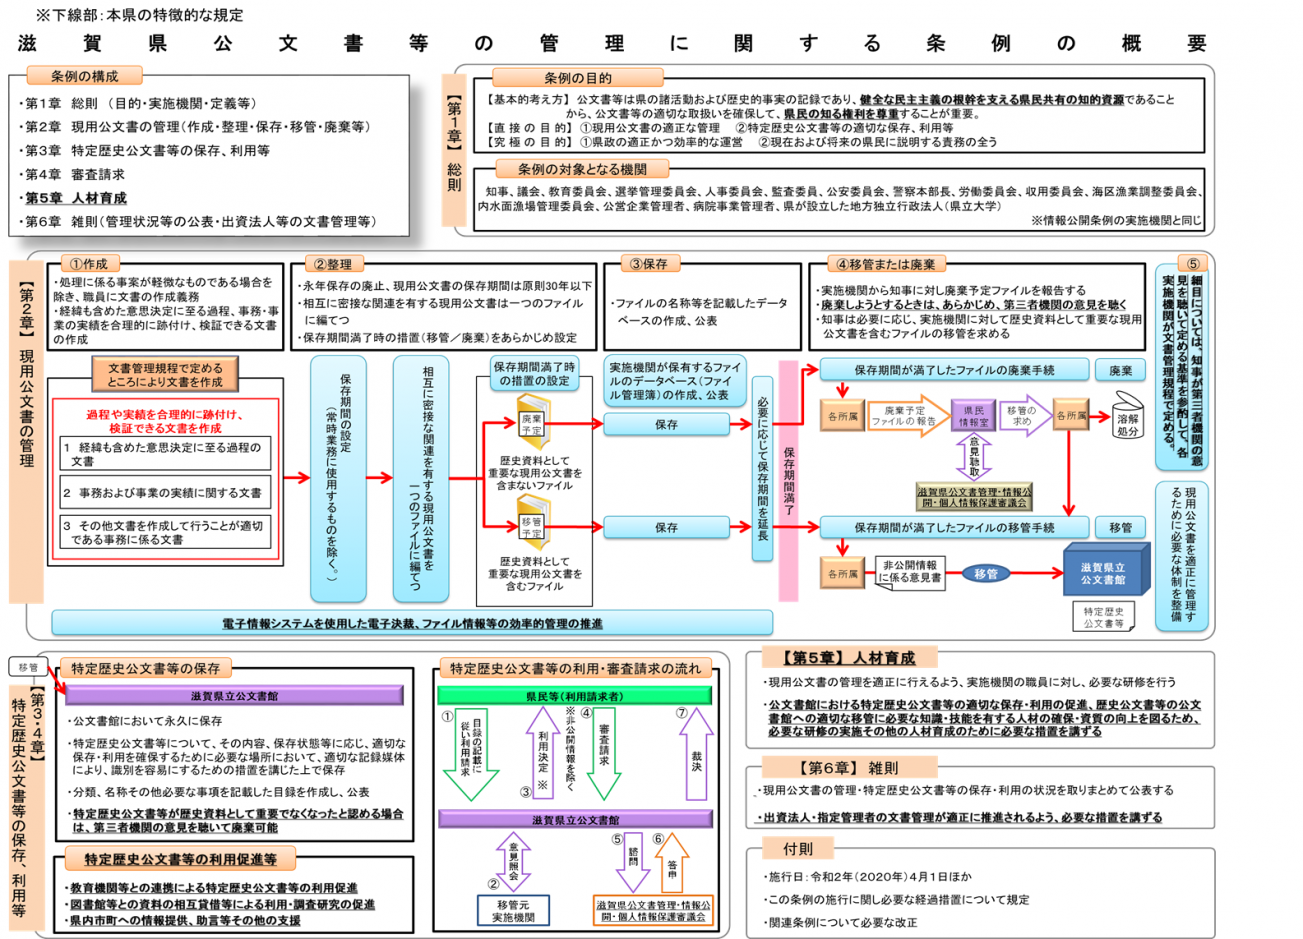 滋賀県公文書等の管理に関する条例の概要